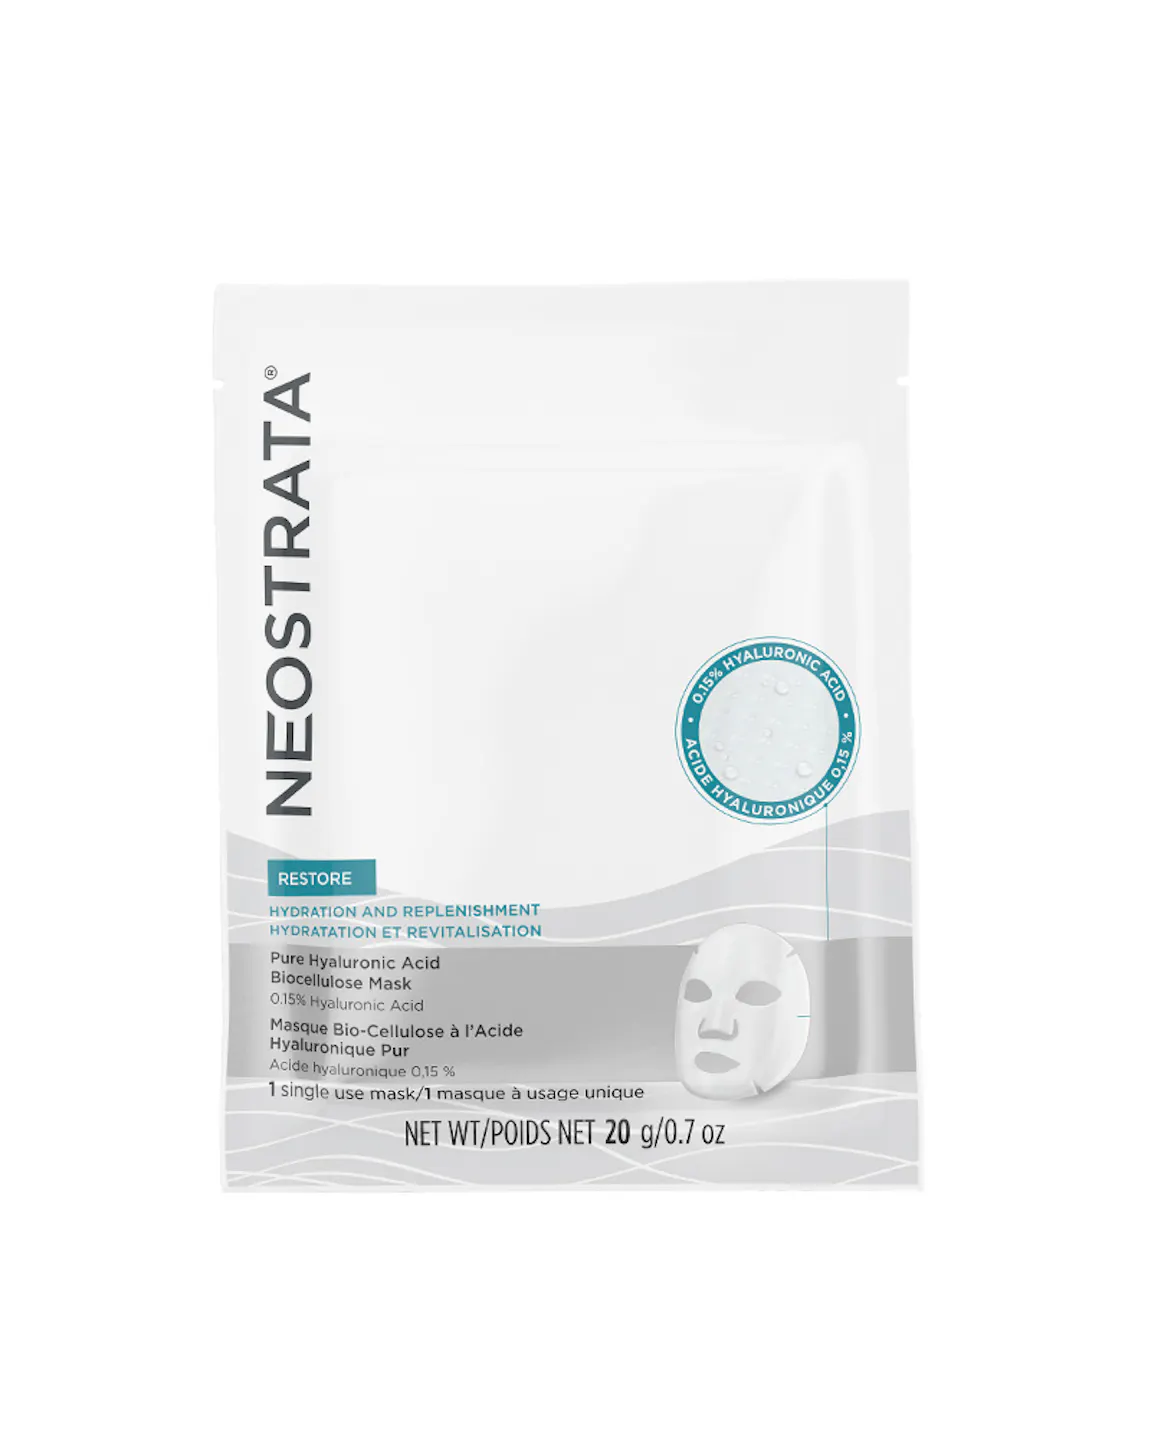 NeoStrata Restore Pure Hyaluronic Acid Biocellulose Mask